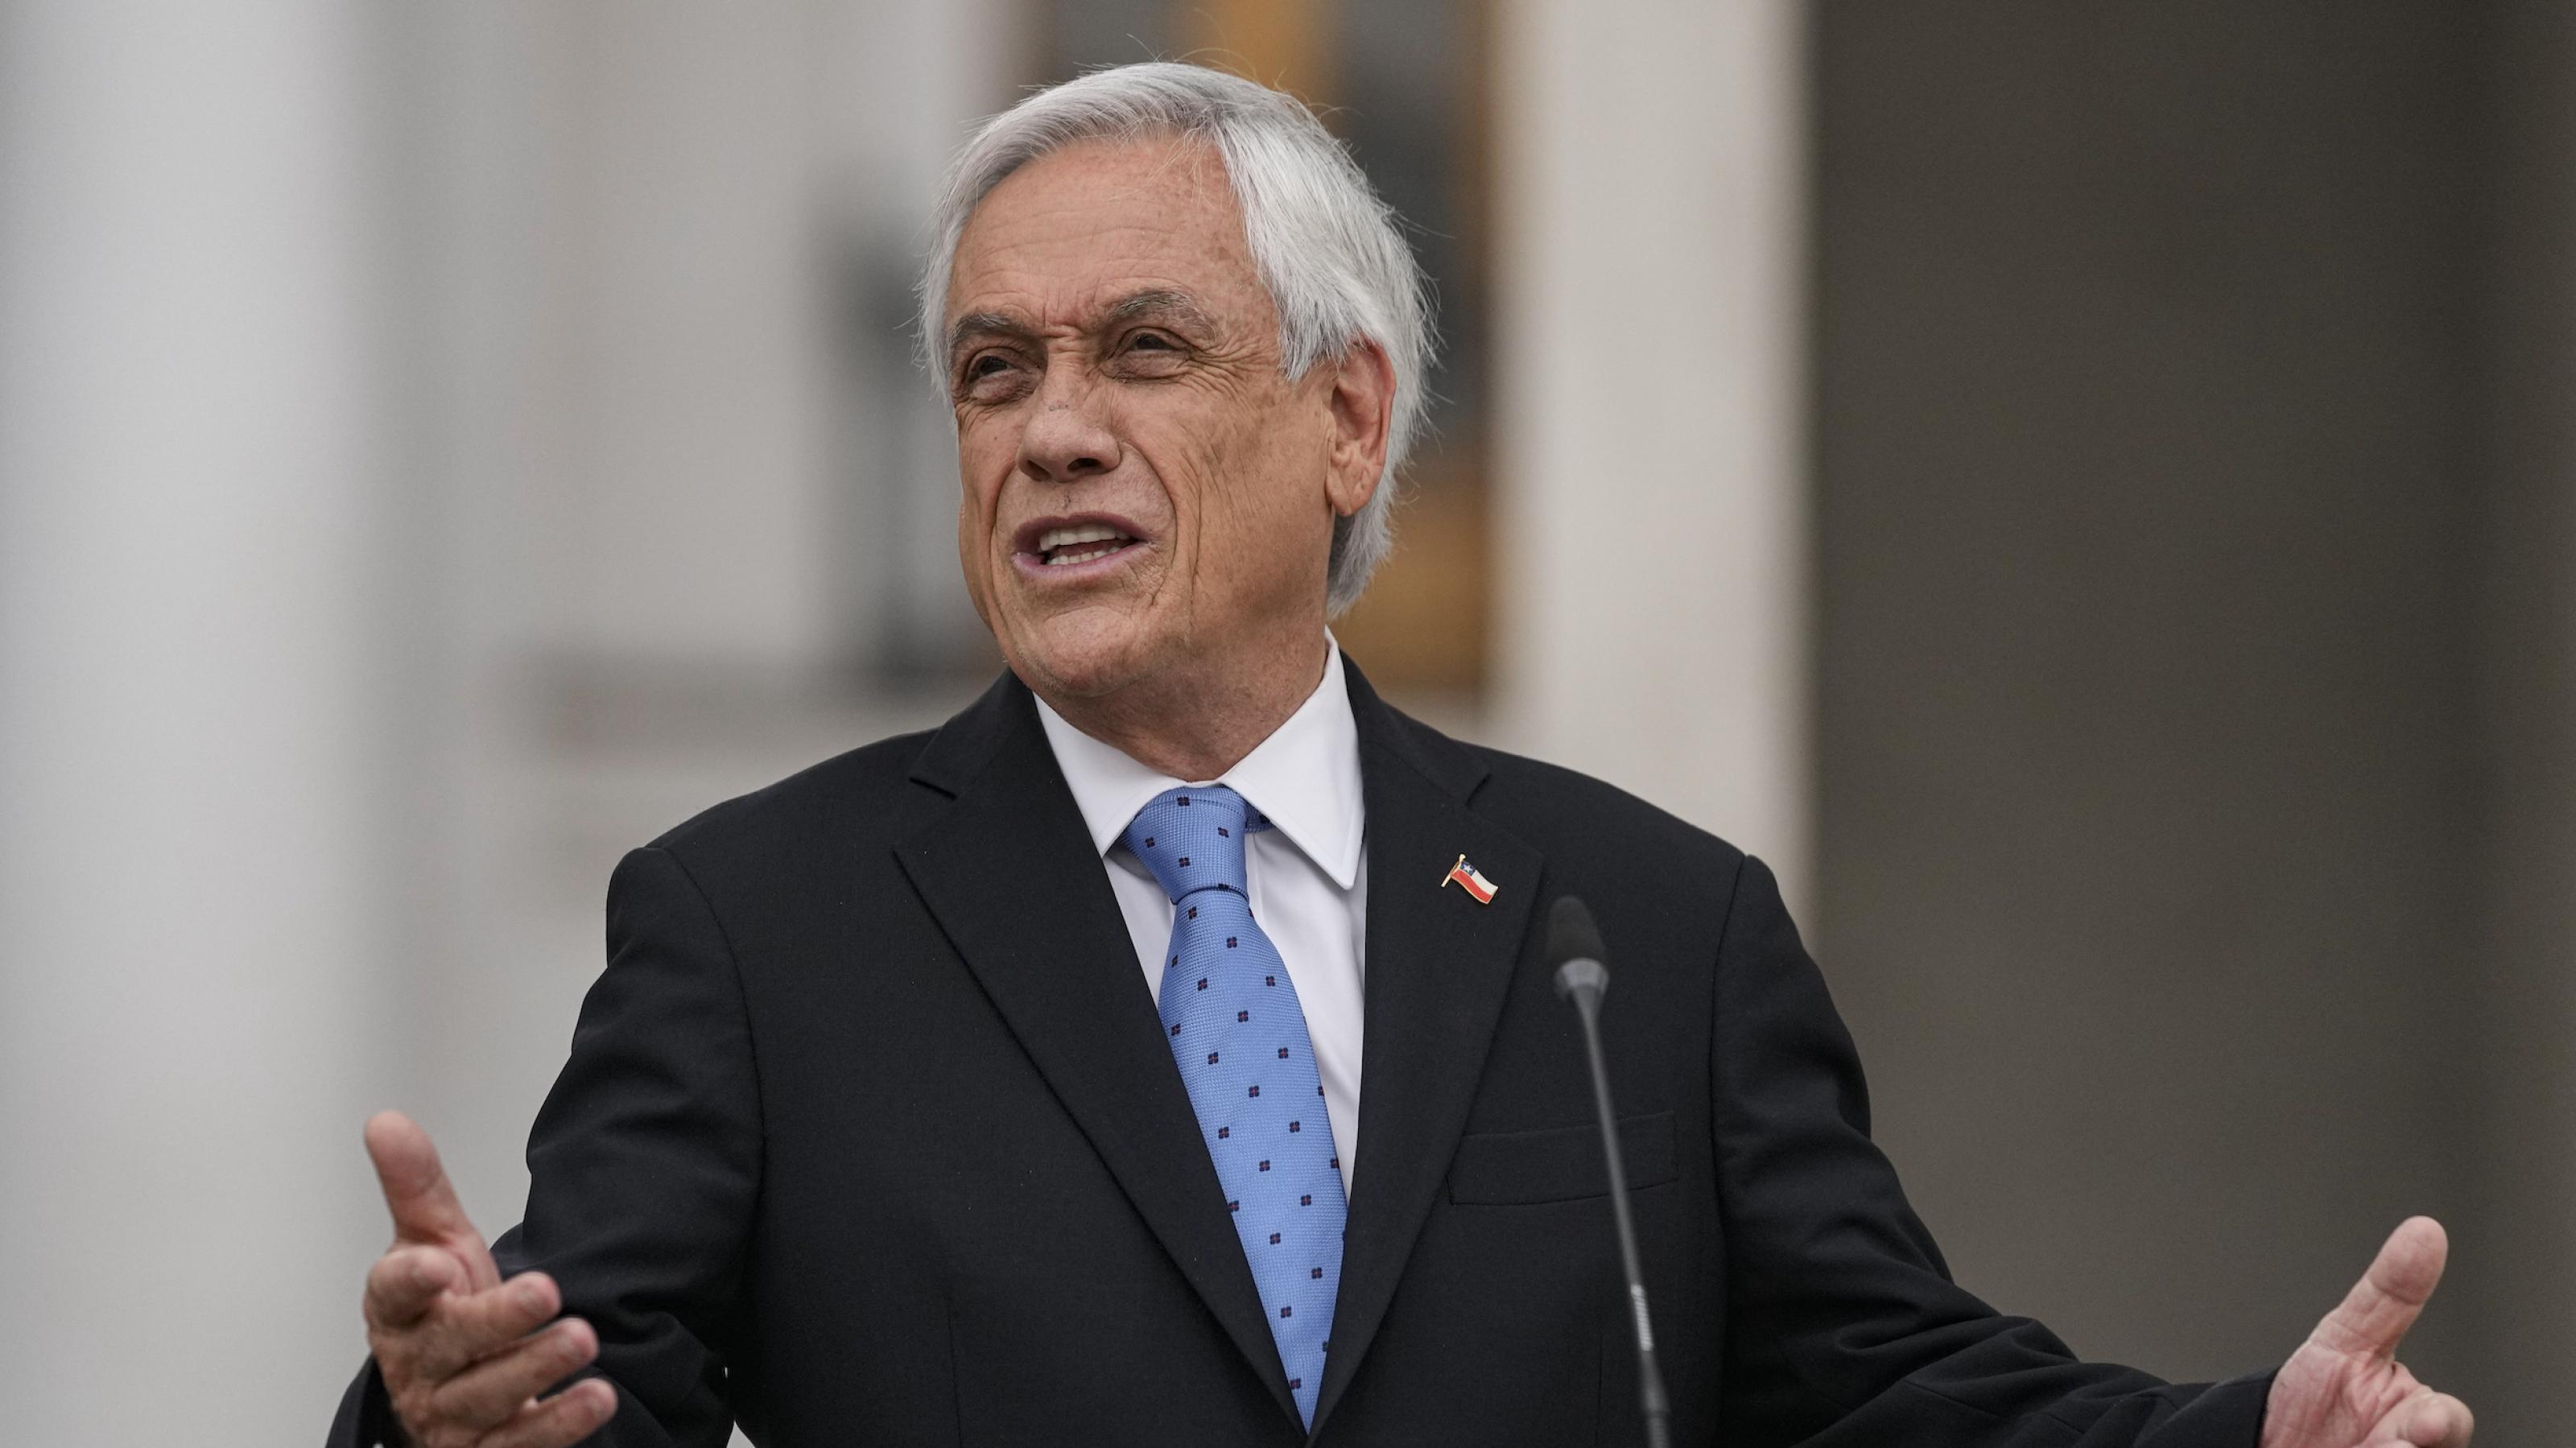 Der chilenische Präsident Sebastian Piñera am Rednerpult mit einem etwas gequälten Gesichtsausdruck.